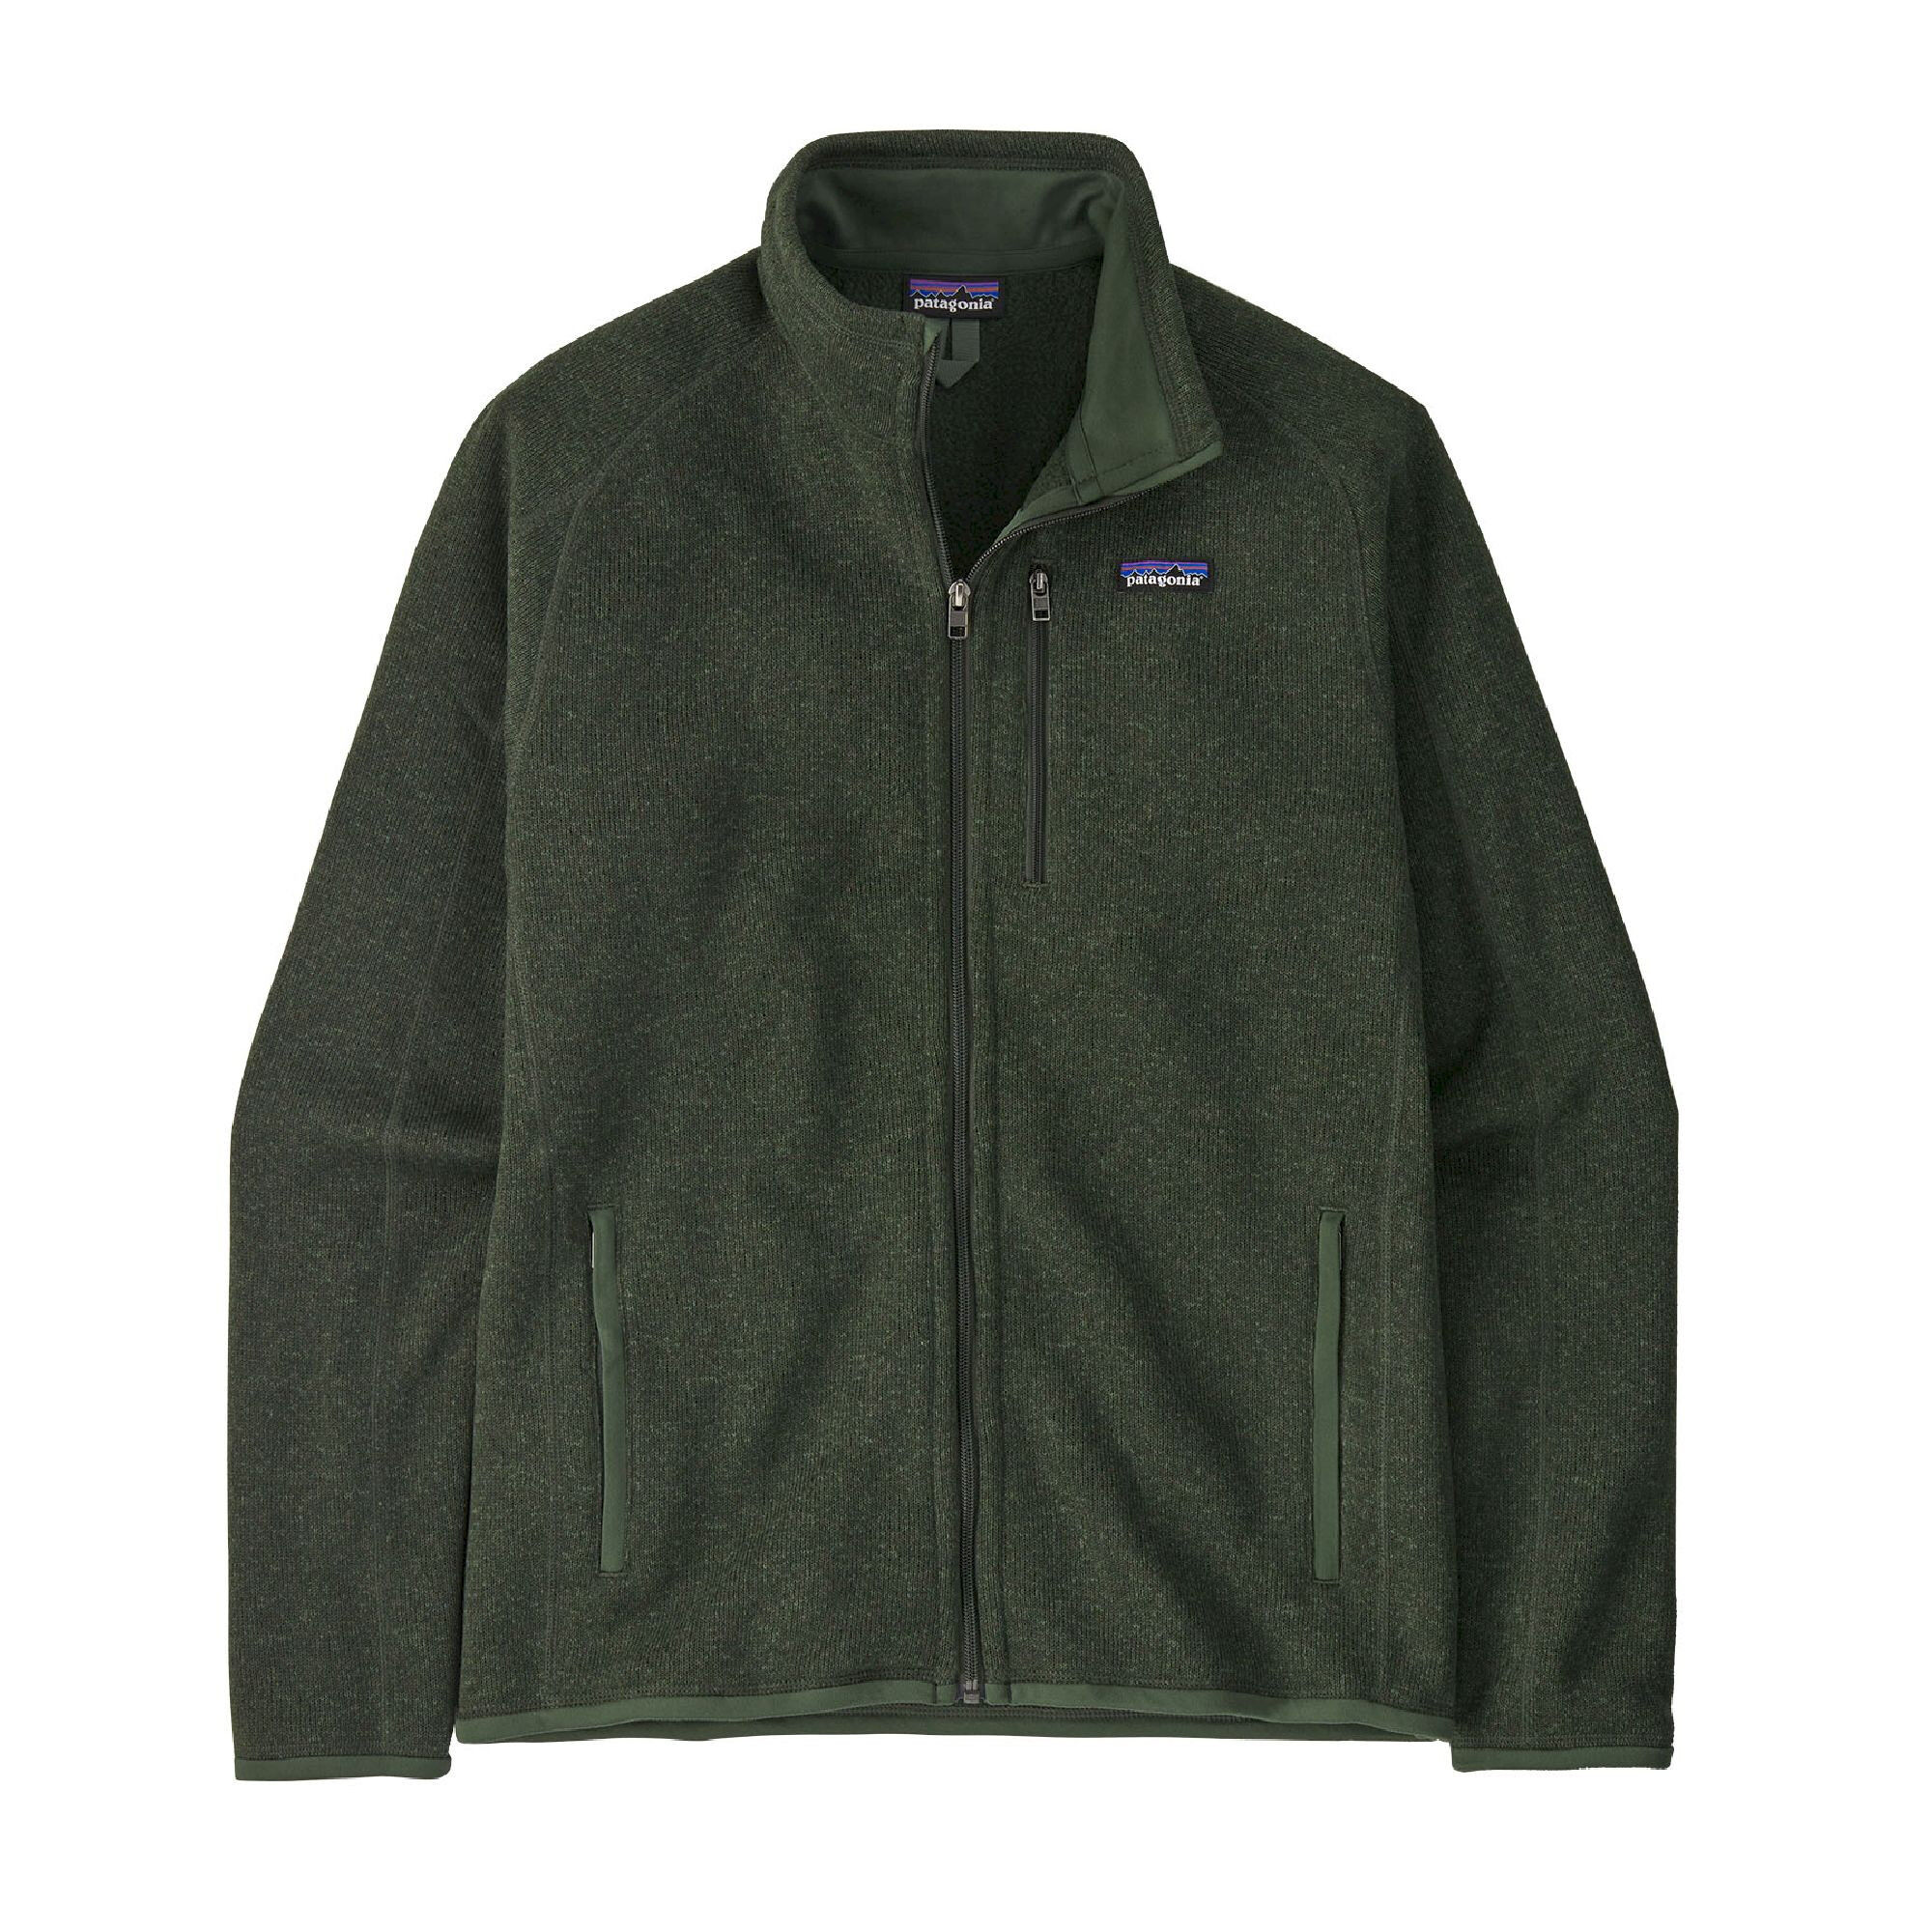 Patagonia Better Sweater Jkt - Fleece jacket - Men's